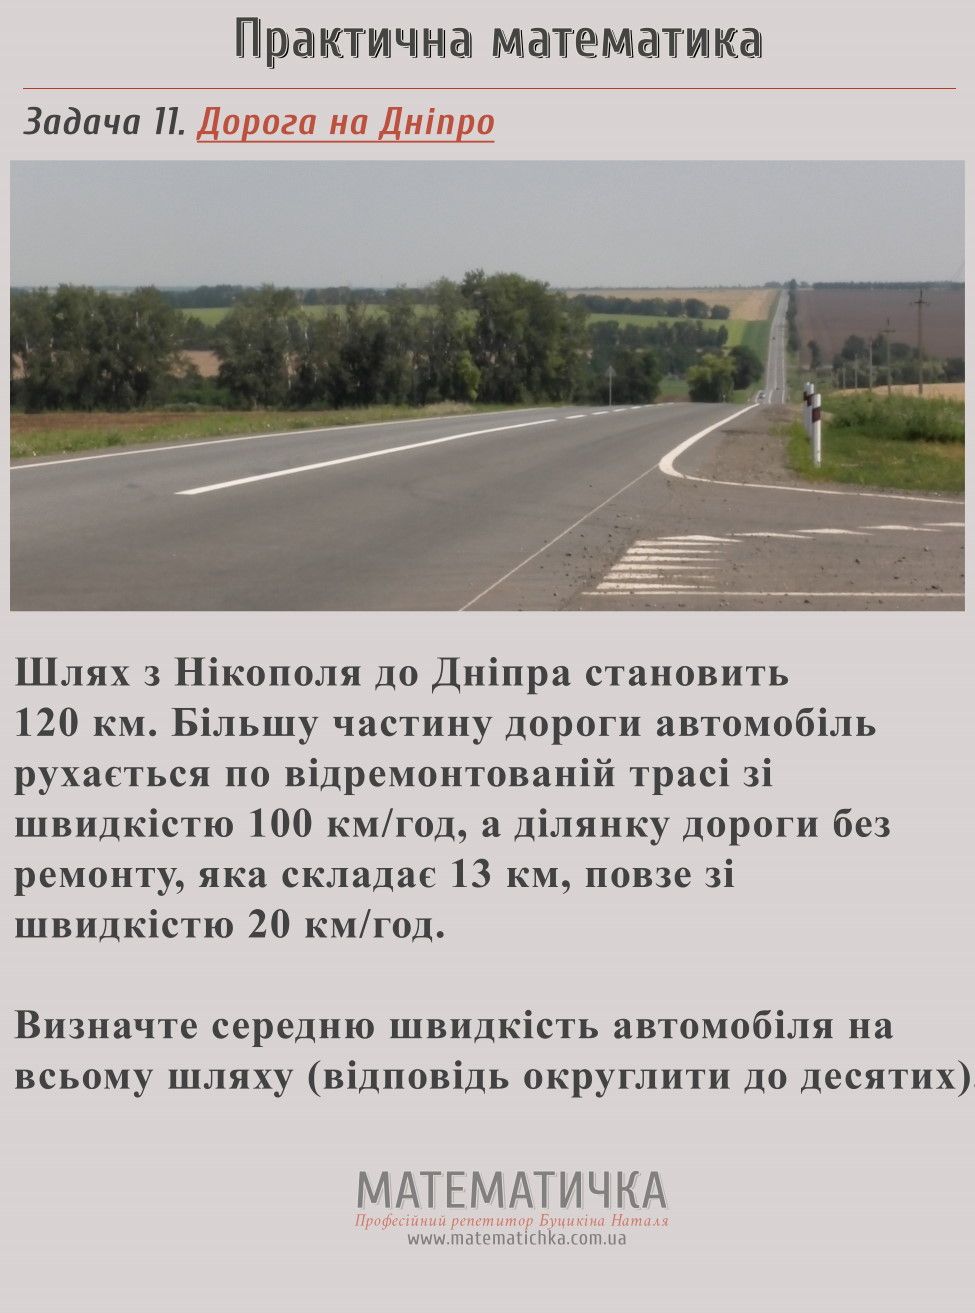 Дорога на Дніпро